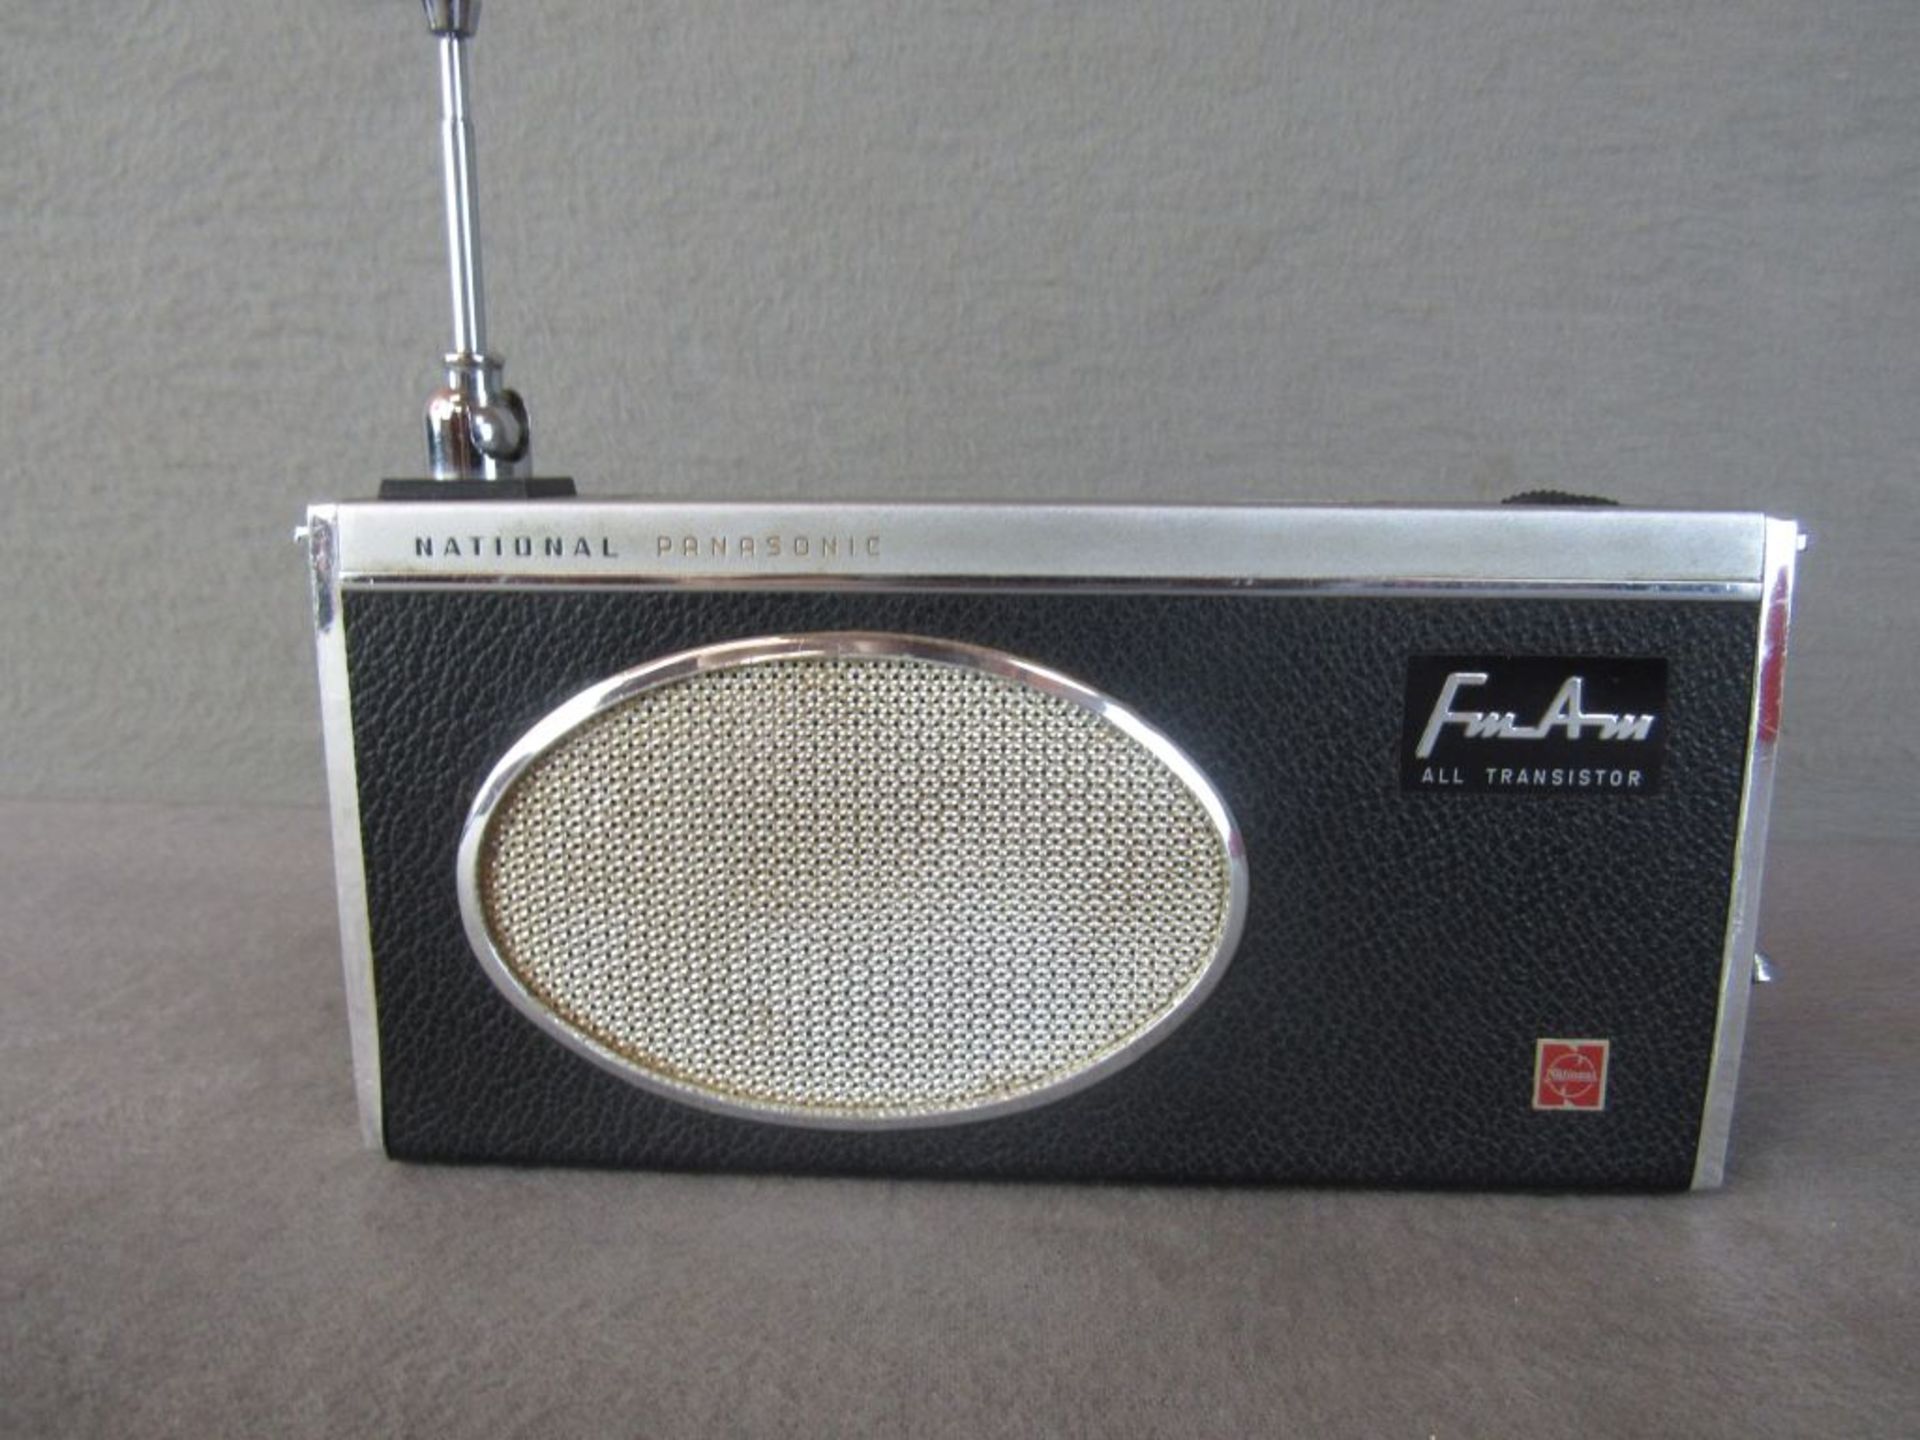 Zwei kleine Kofferradios 60er Jahre Länge: 1x 19,5cm 1x 15,5cm - Bild 4 aus 5